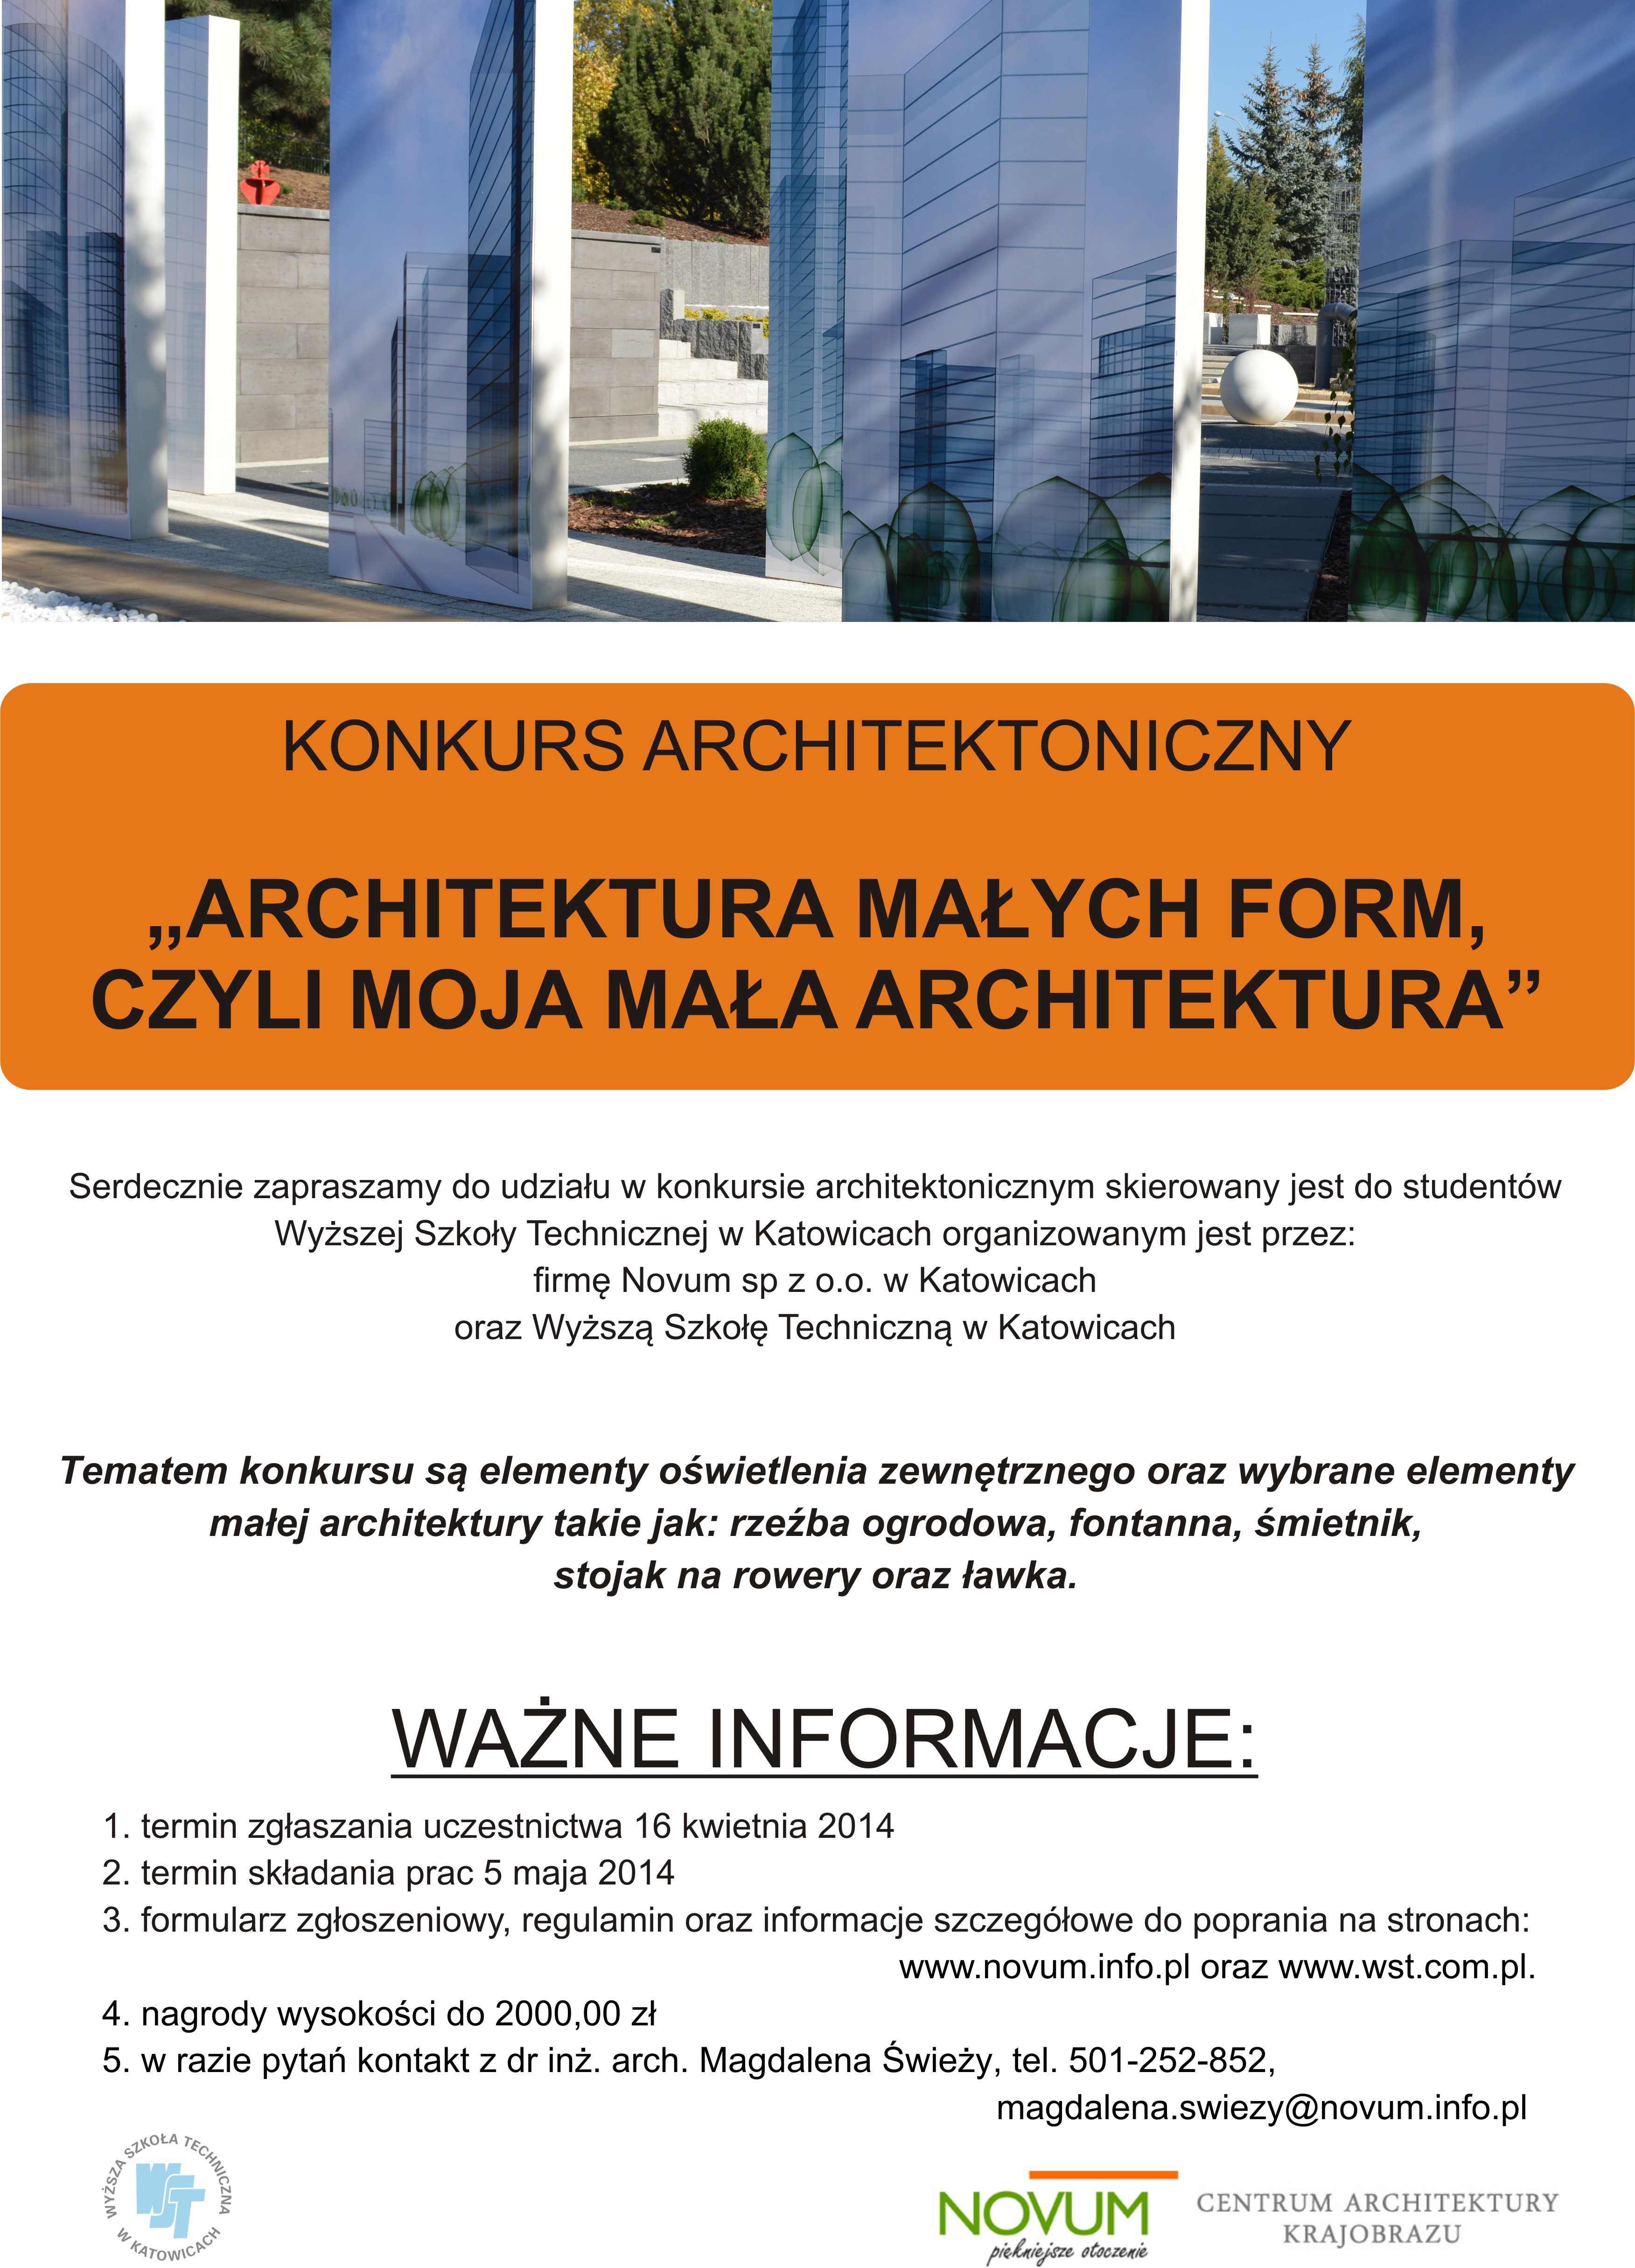 Konkurs architektoniczny pt. „ Architektura małych form czyli moja mała architektura”